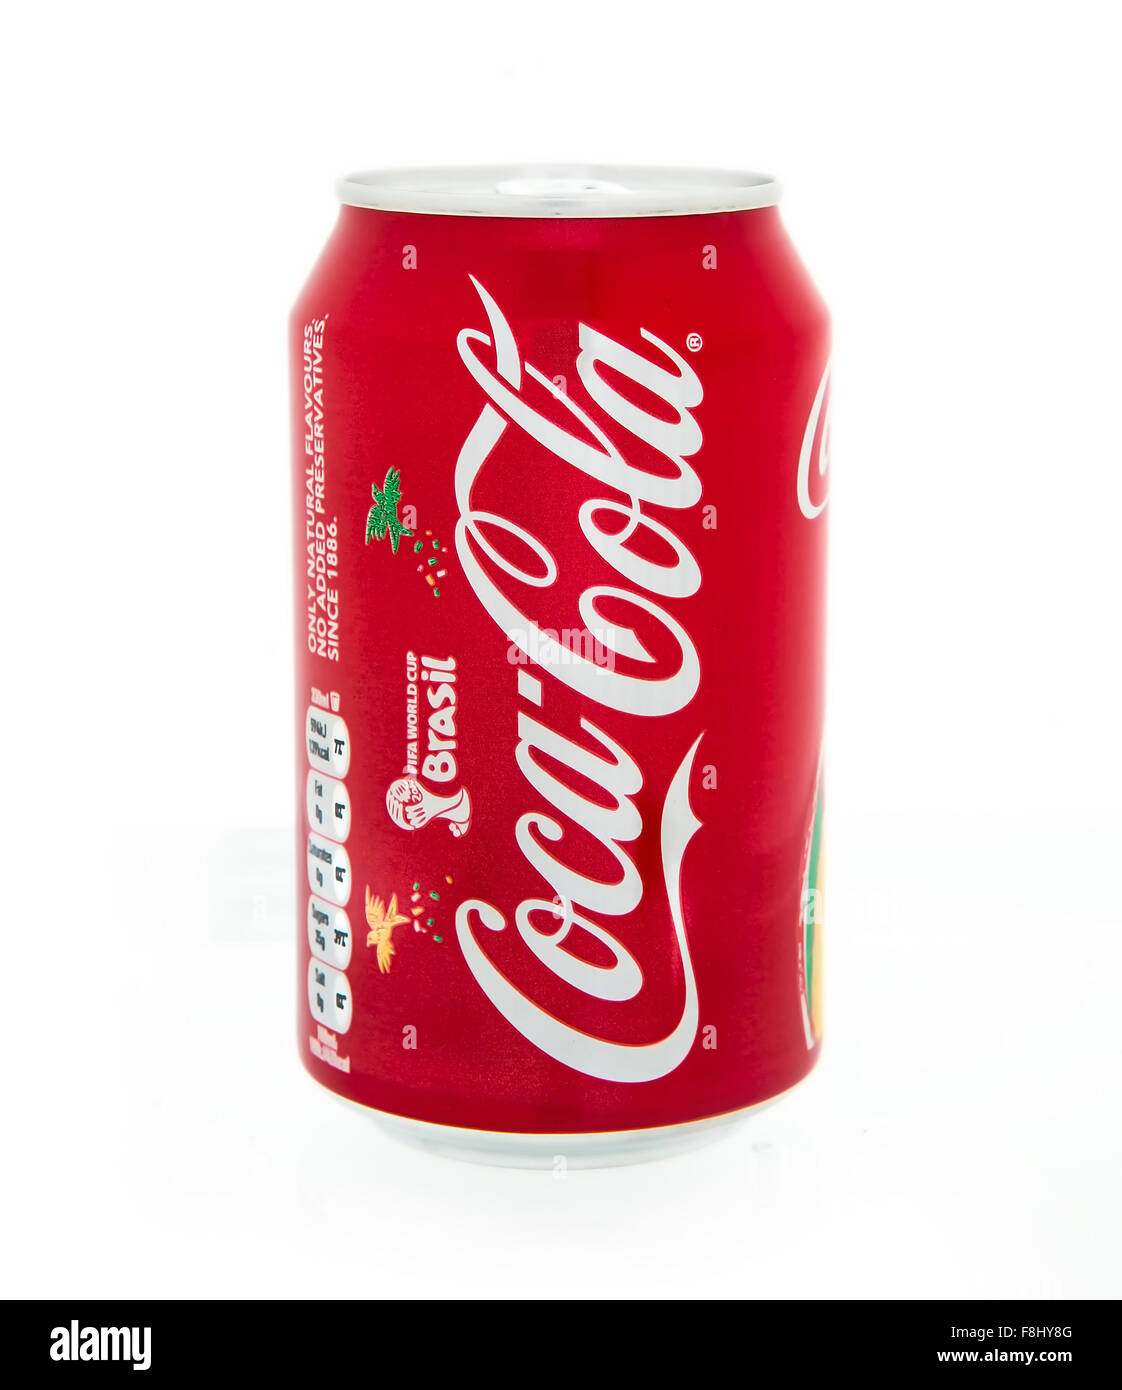 Une canette de coca cola coca Banque d'images détourées - Alamy